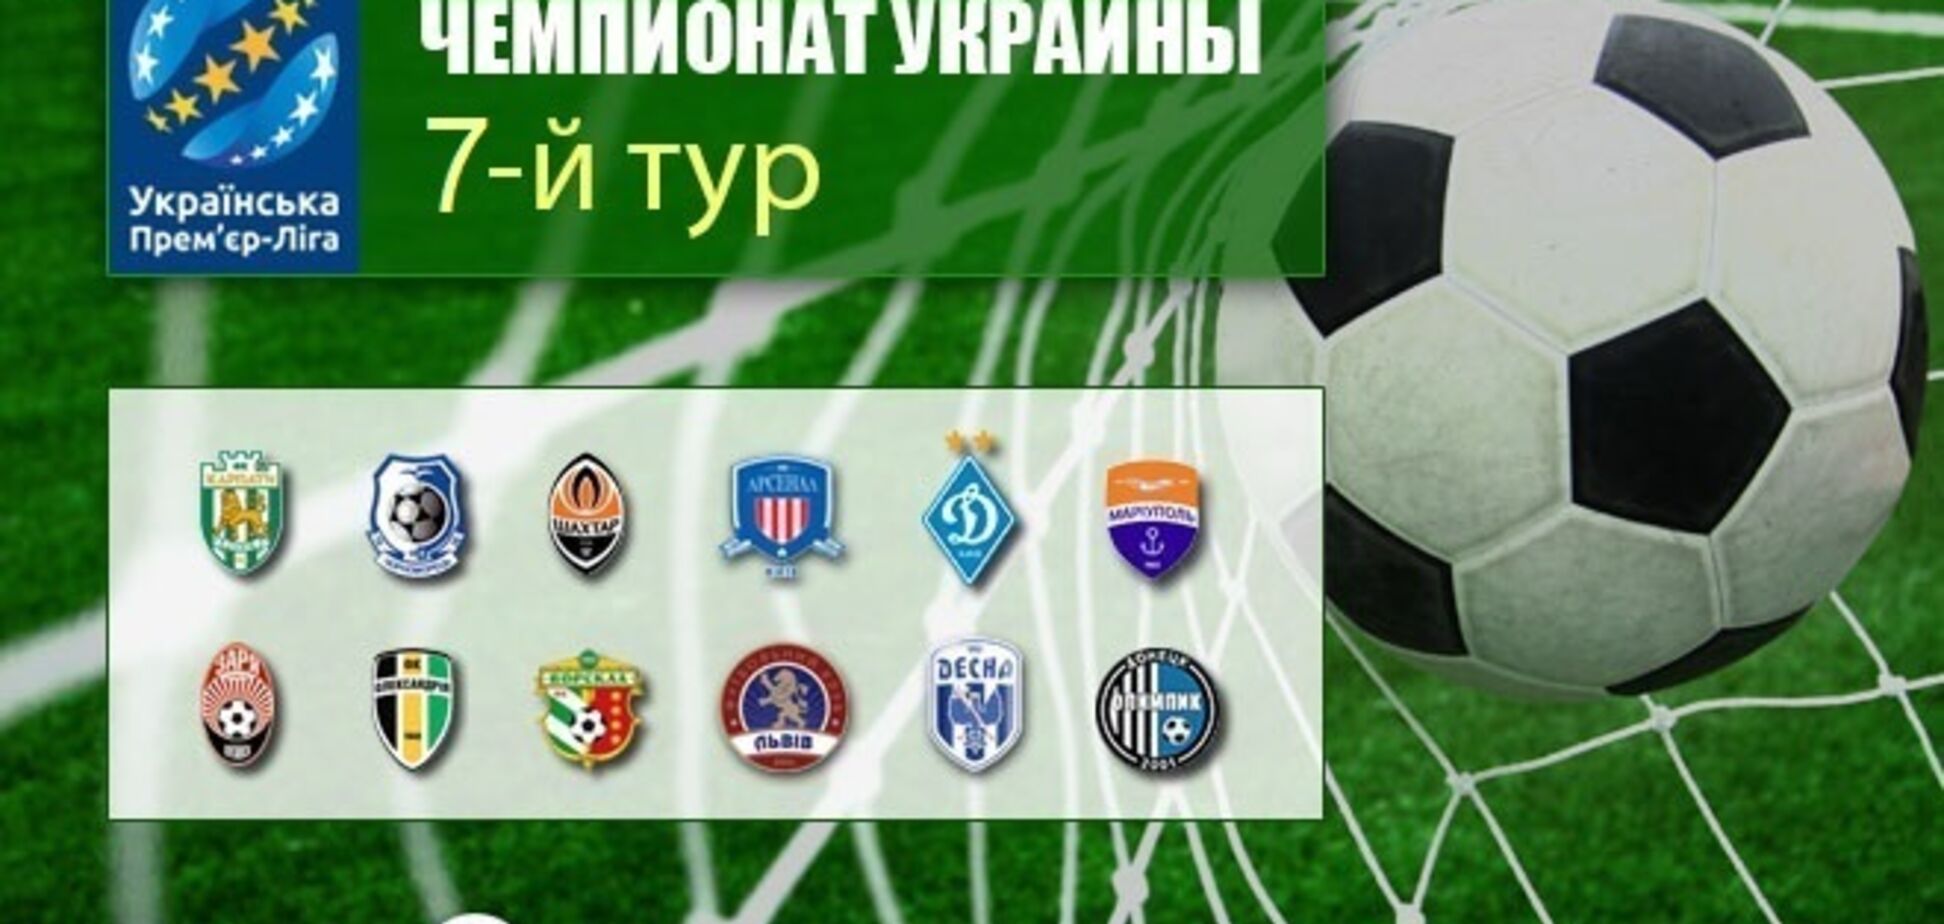 7-й тур чемпионата Украины по футболу: результаты и видеообзоры